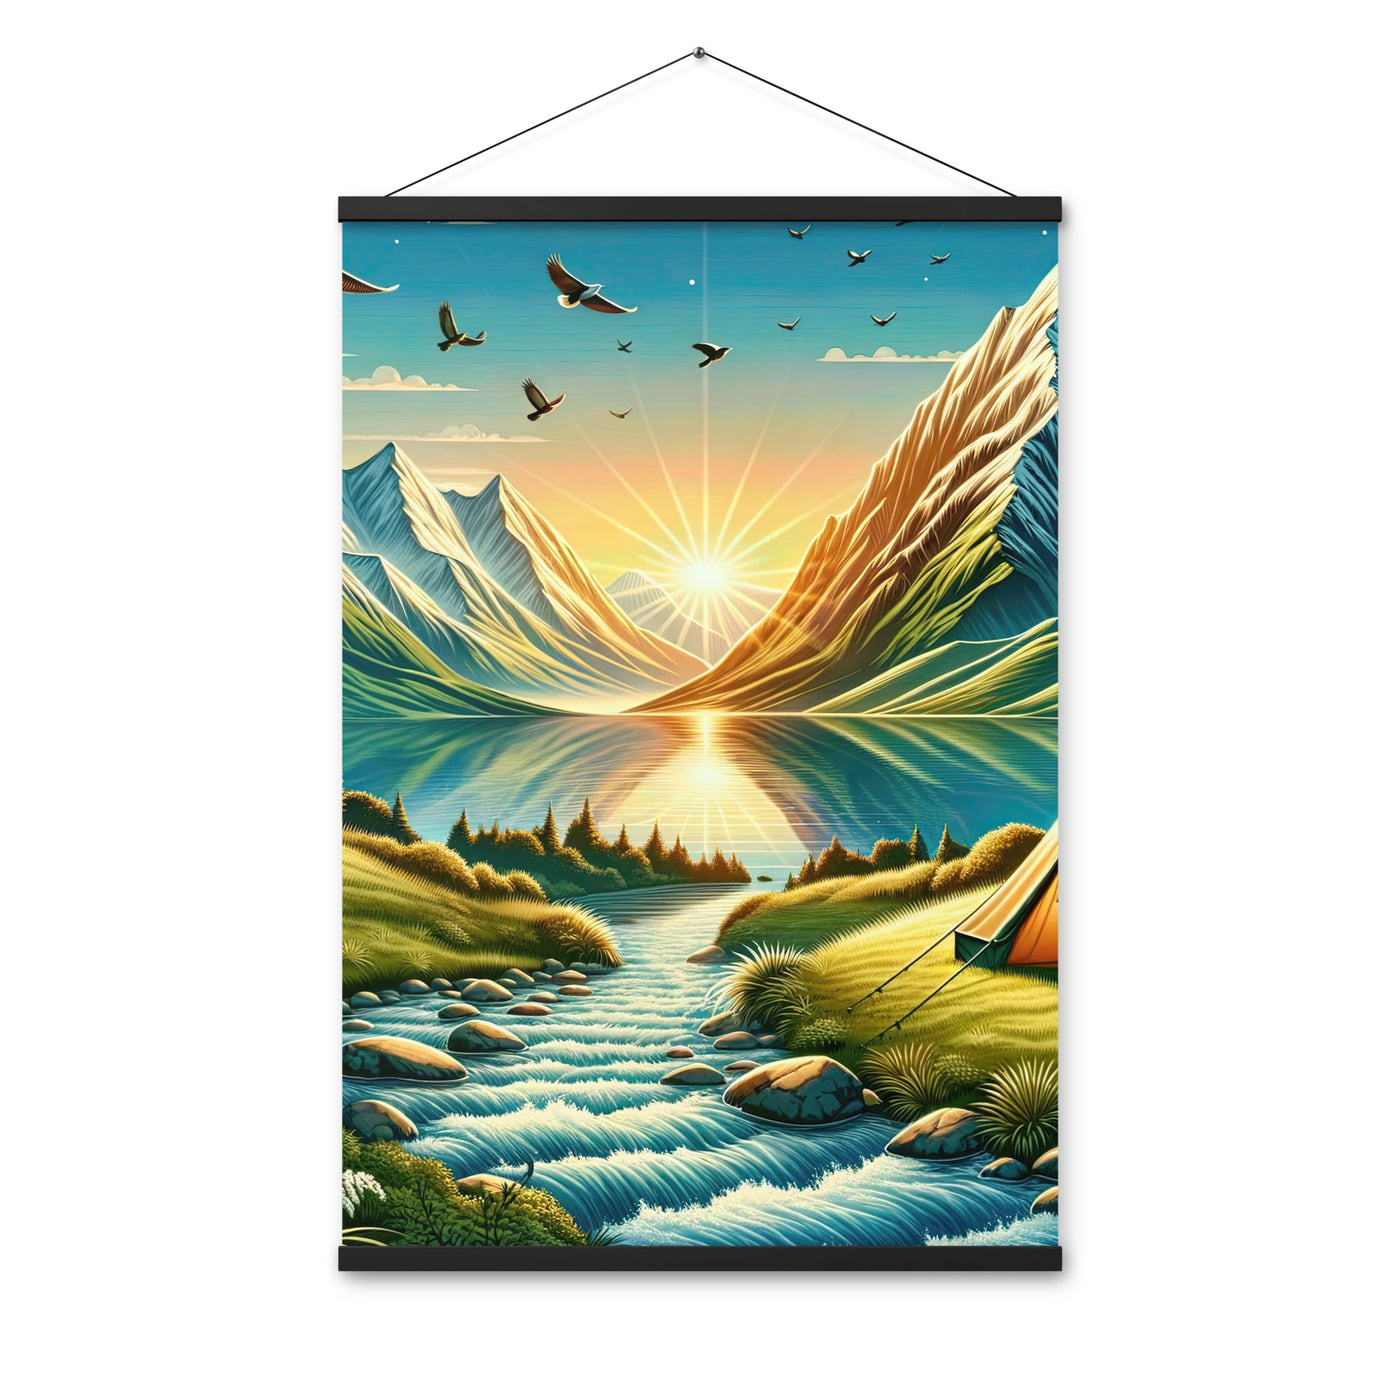 Zelt im Alpenmorgen mit goldenem Licht, Schneebergen und unberührten Seen - Premium Poster mit Aufhängung berge xxx yyy zzz 61 x 91.4 cm